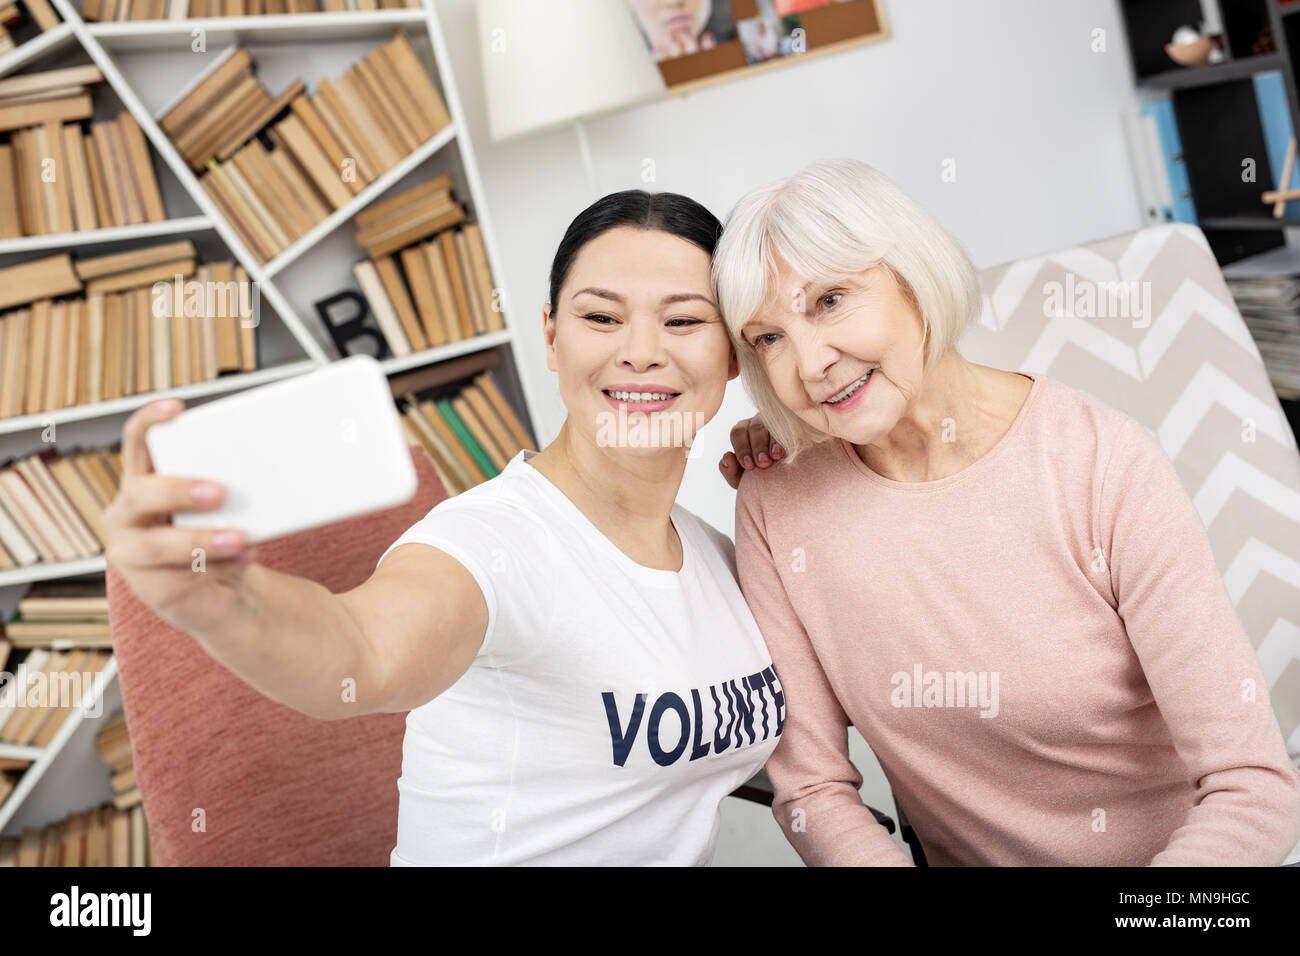 Gioioso e di volontariato senior donna prendendo selfie Foto Stock